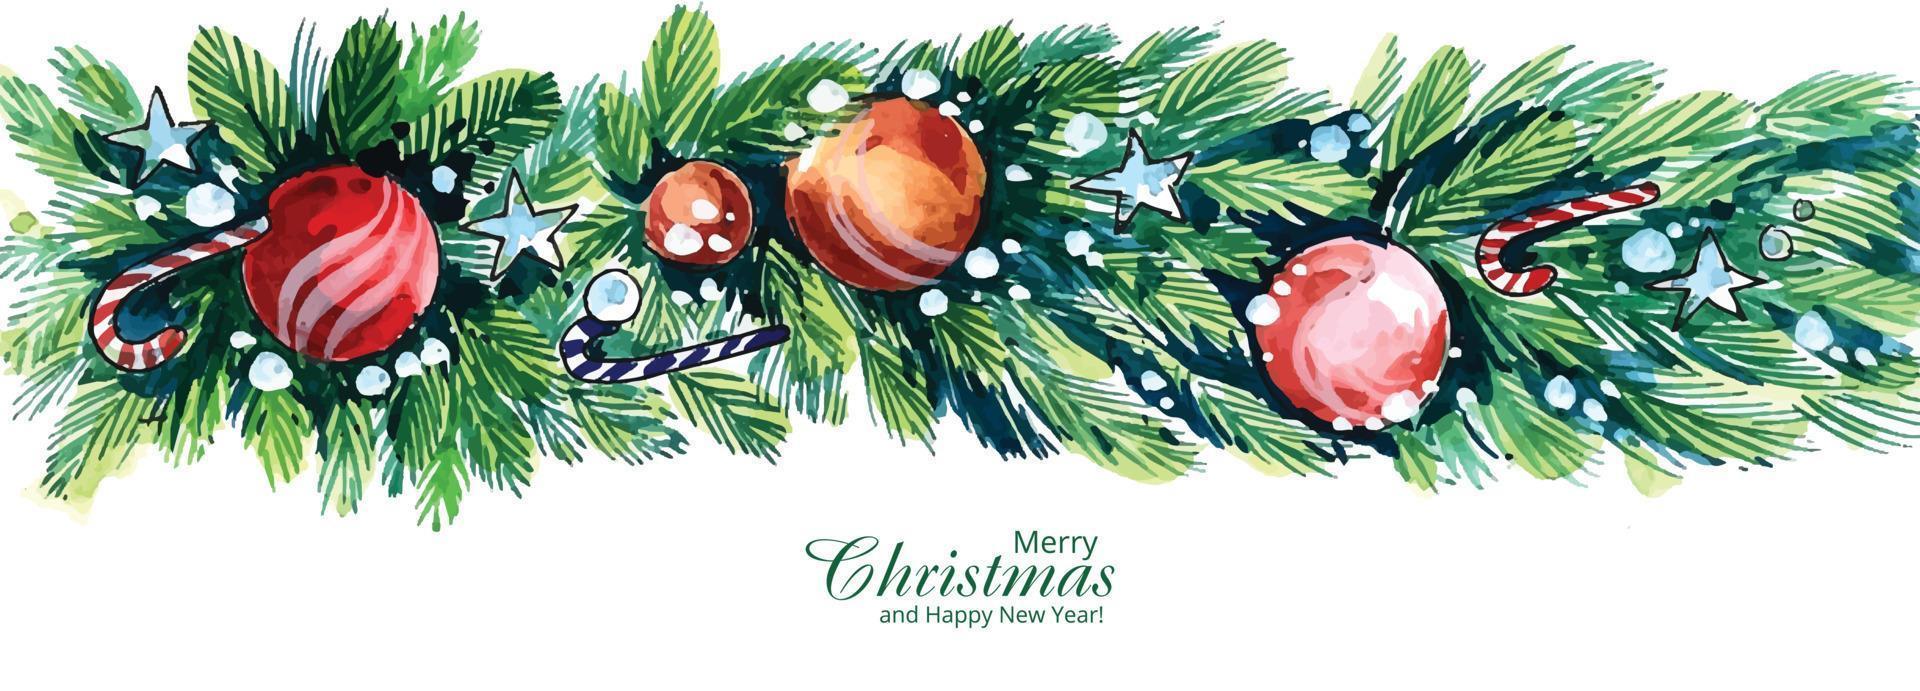 dekoratives Weihnachtskranz-Banner-Kartendesign vektor